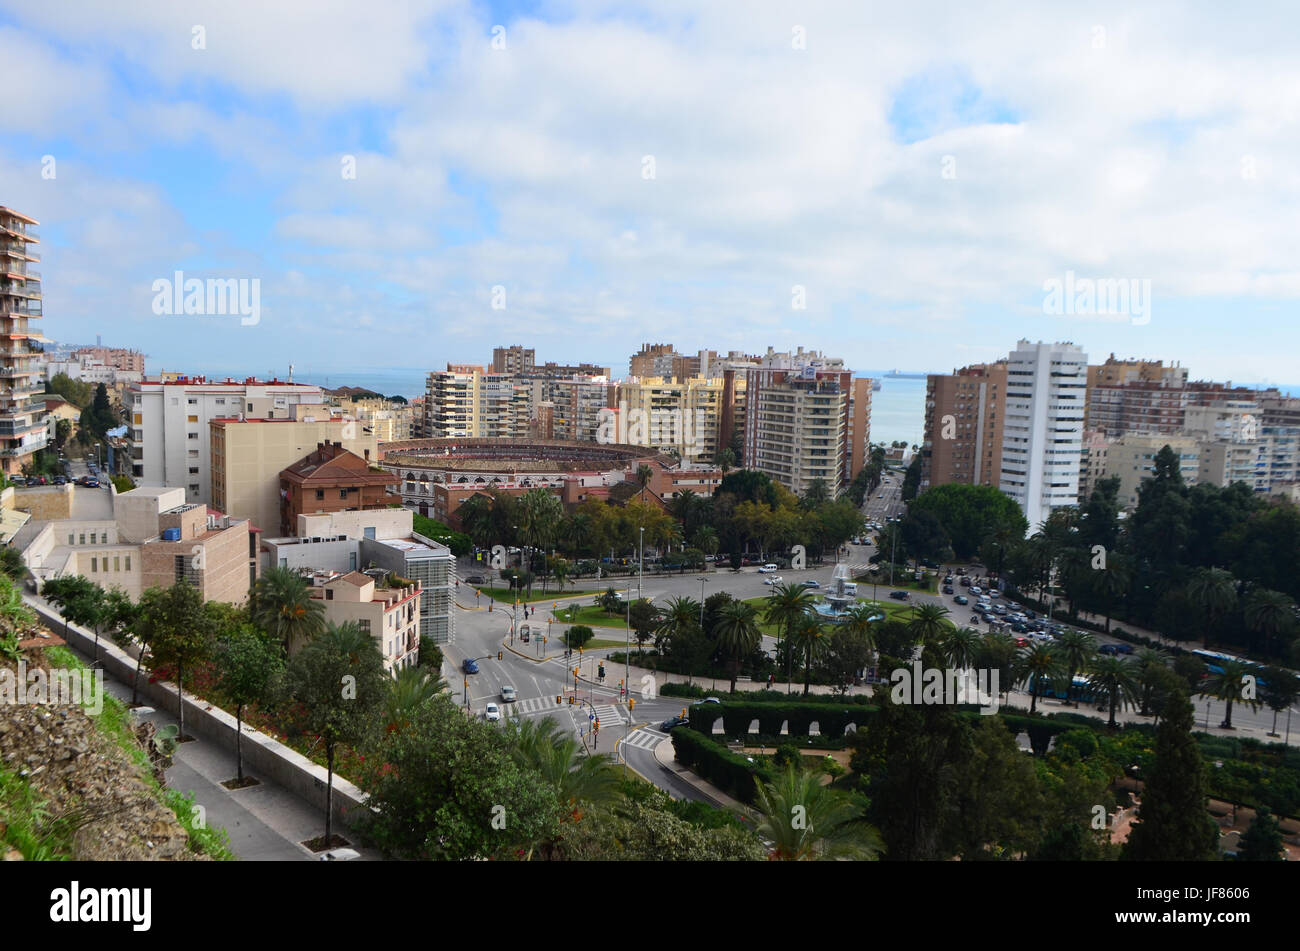 Plaza de Toros de La Malagueta and City Landscape View from Mount Gibralfaro in Málaga, Spain Stock Photo